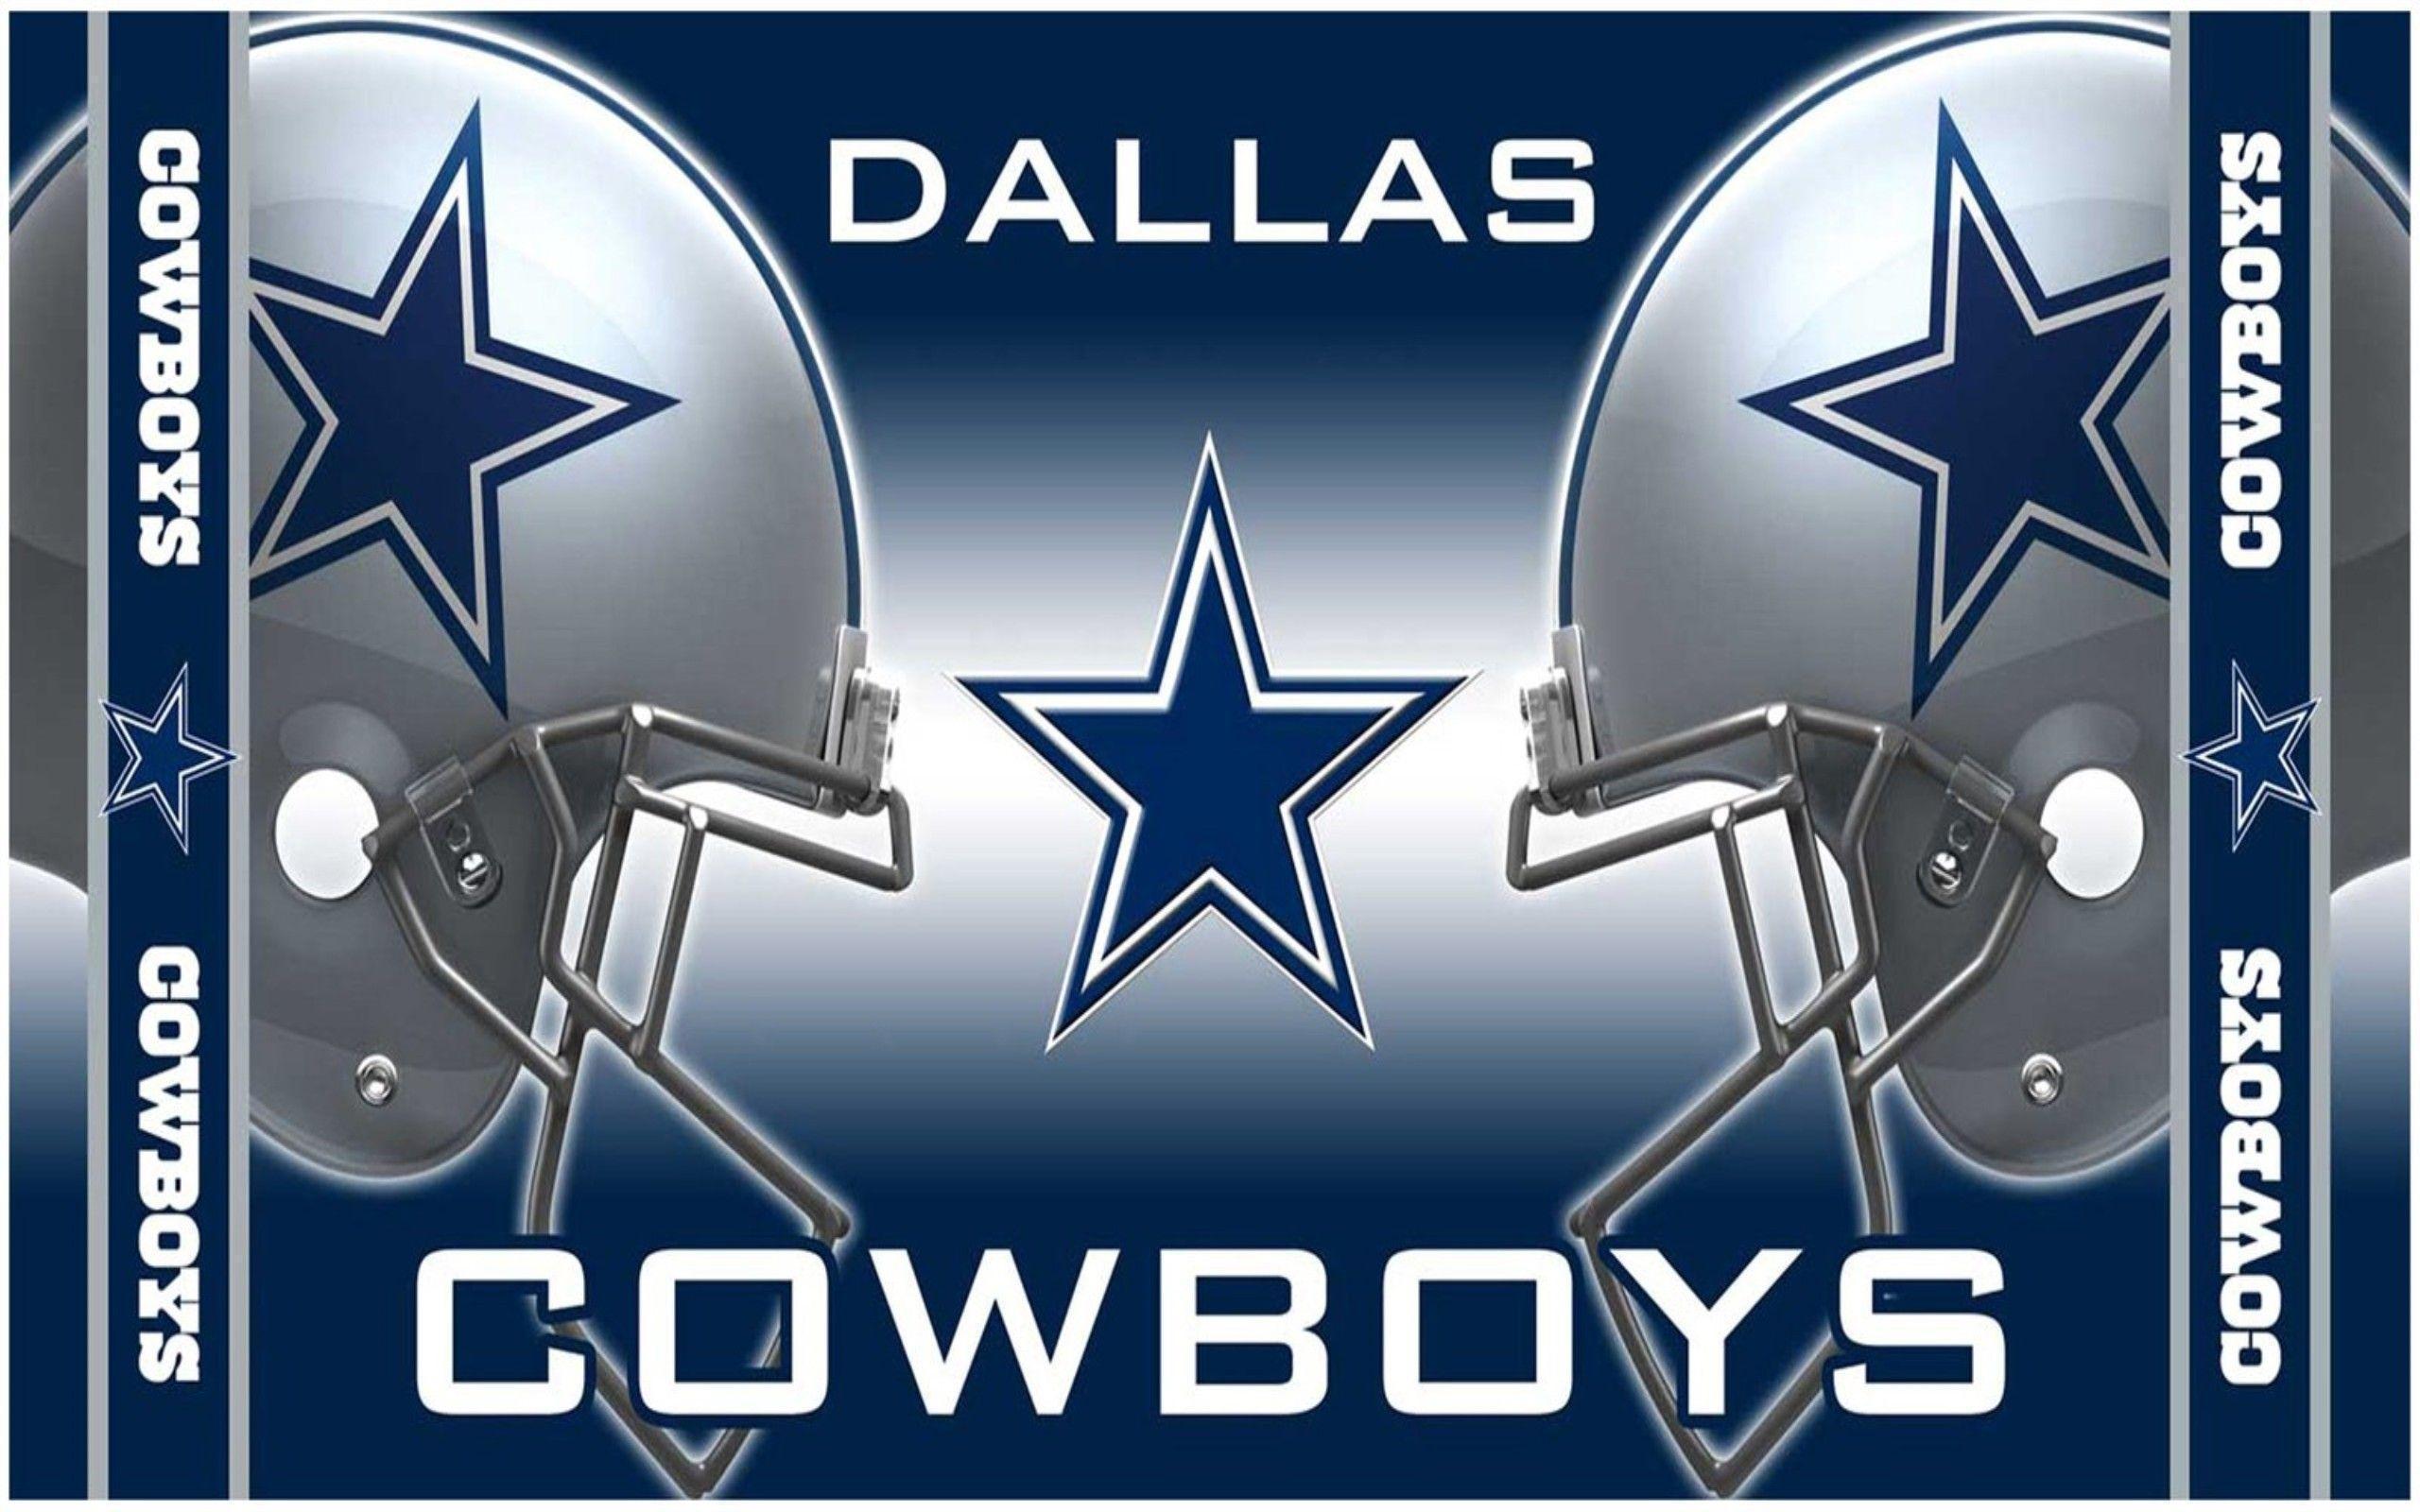 Dallas Cowboys 2016 Schedule Wallpaper